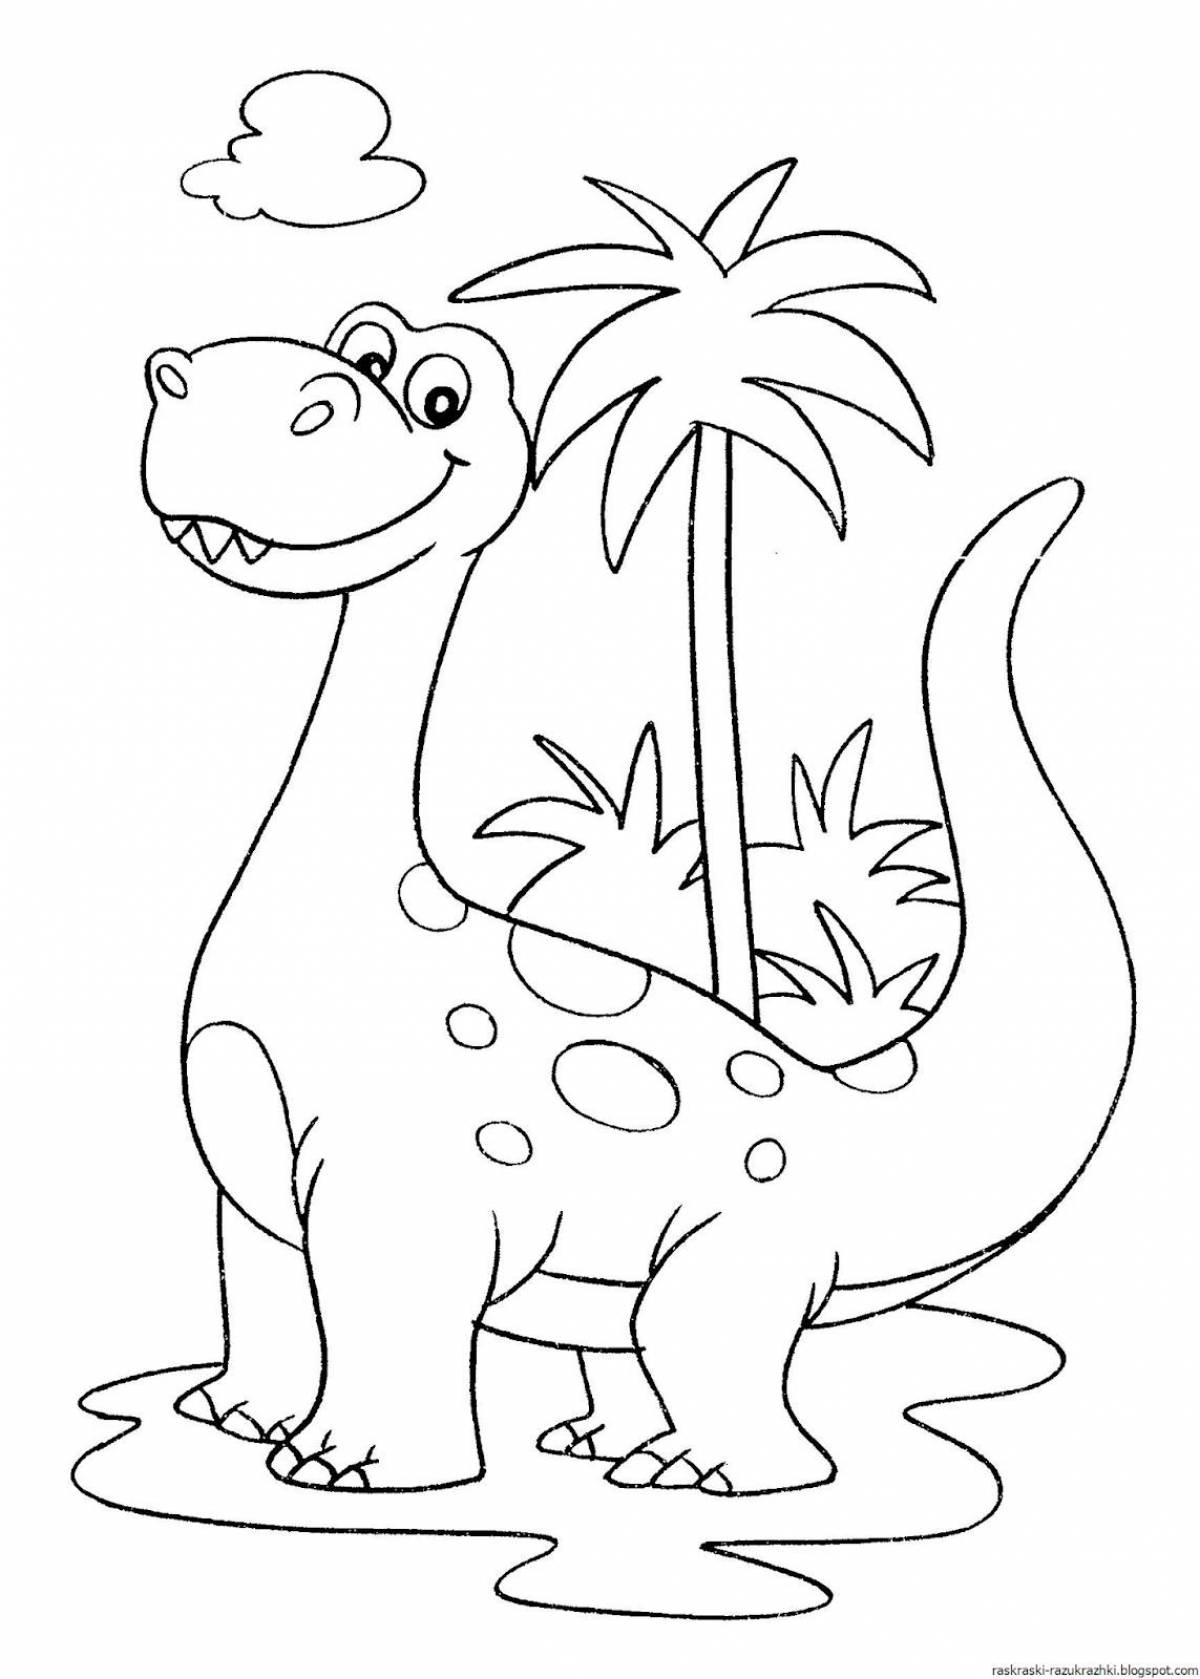 Юмористическая раскраска динозавров для детей